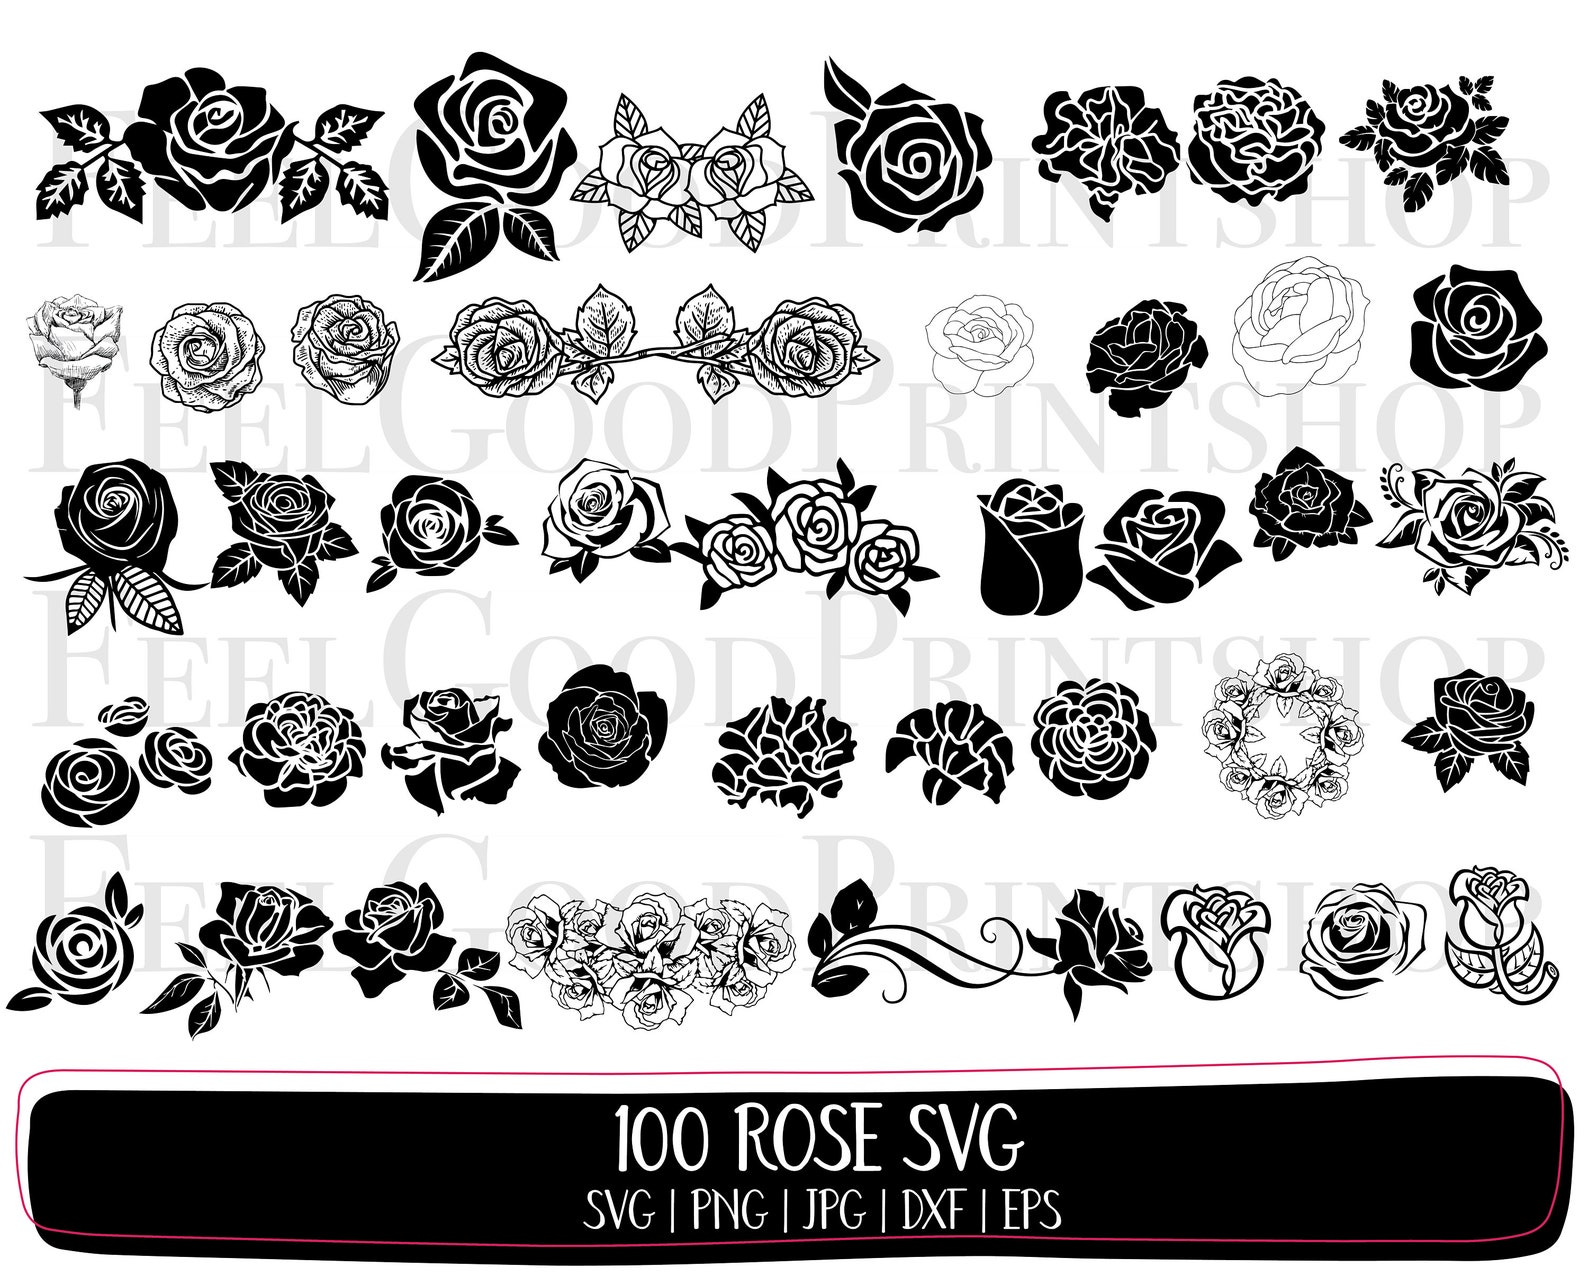 100 Rose Svg Bundle Flower Svg Roses Svg Rose Clipart Etsy | Images and ...